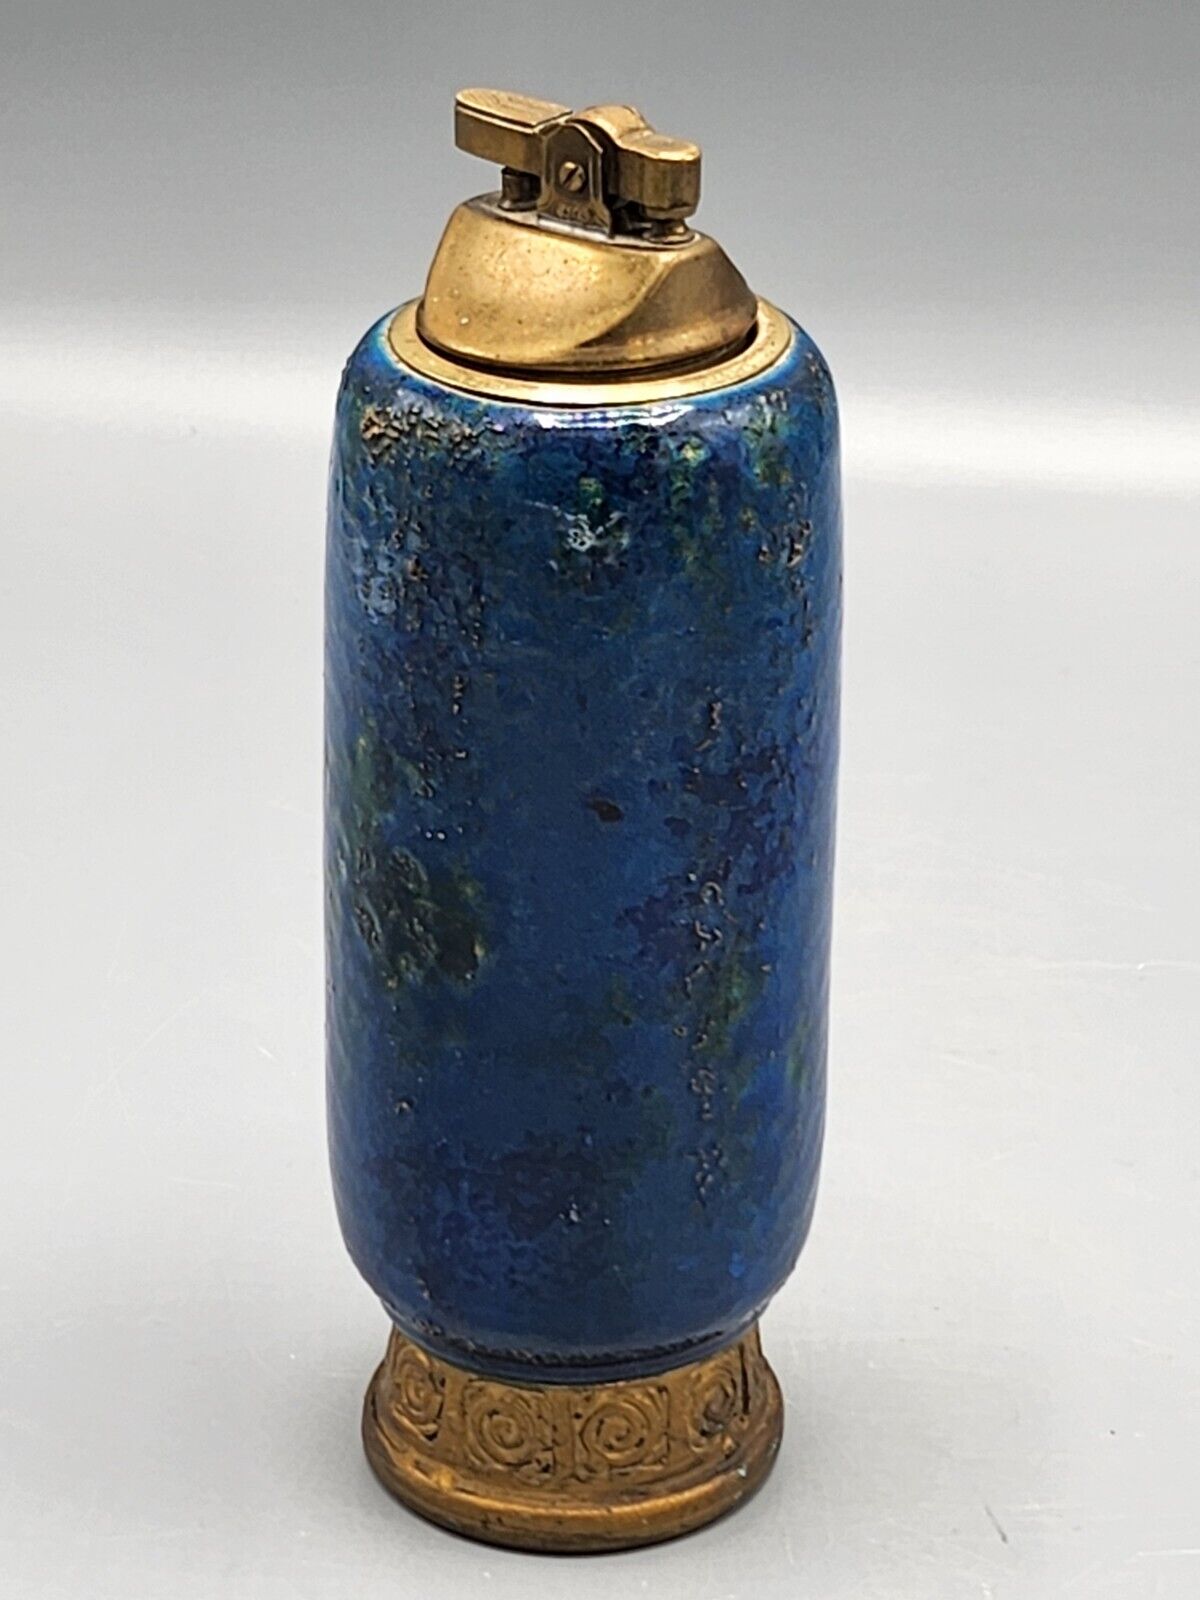   Aldo Londi Bitossi Rosenthal Netter Chinese Blue Ceramic Table Lighter